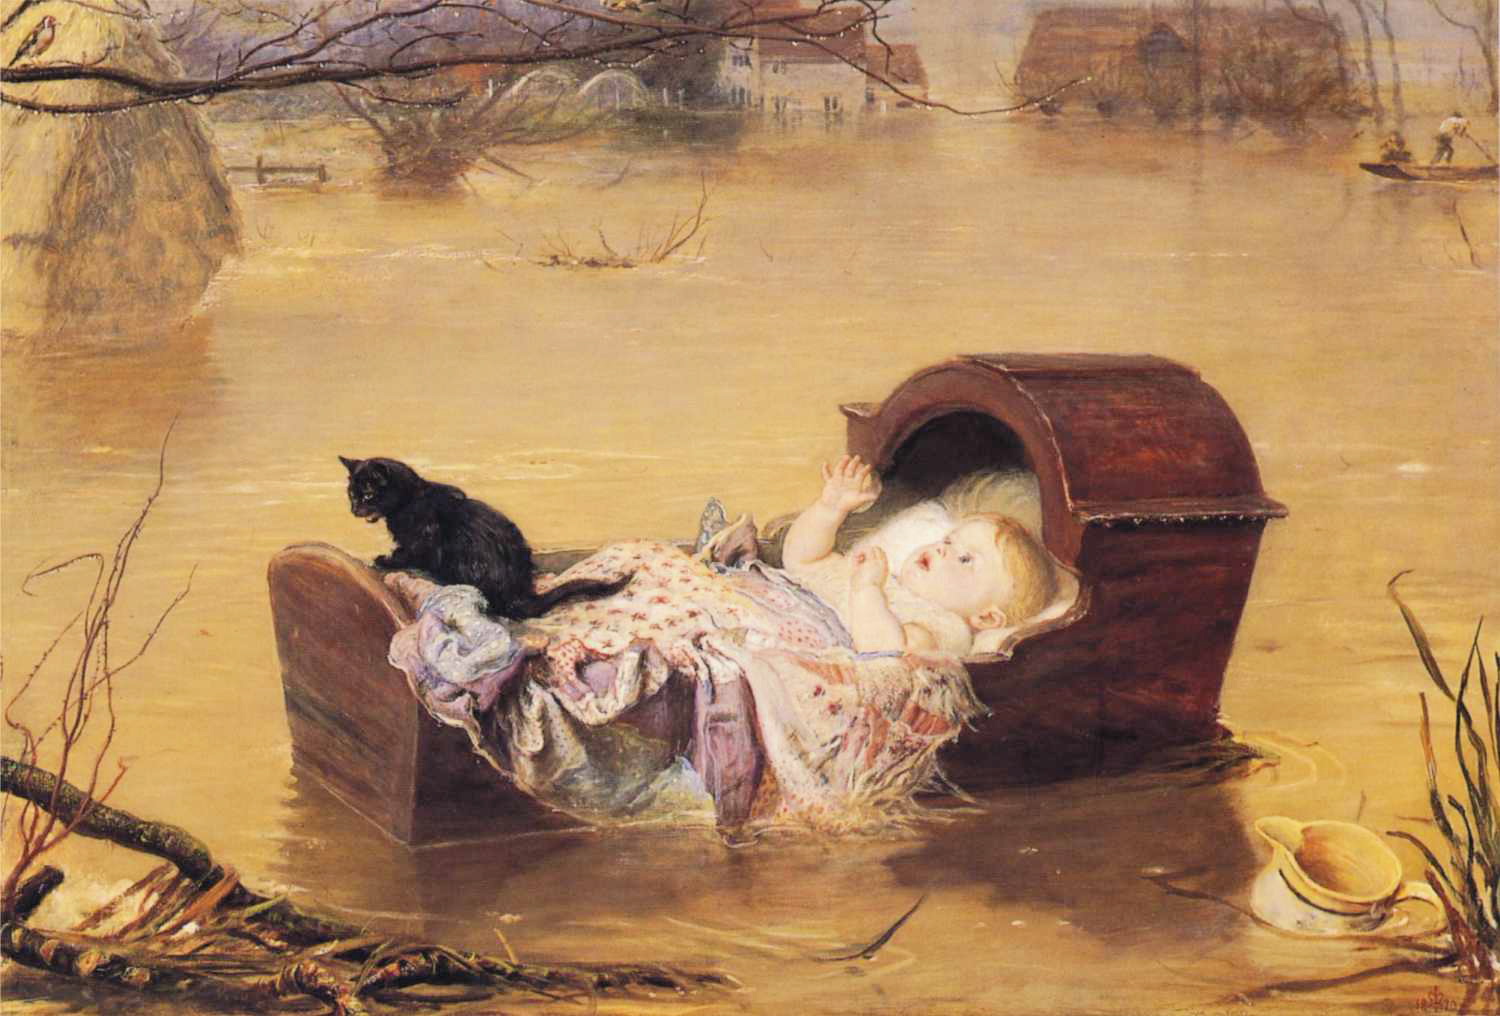 Джон Эверетт Милле. Наводнение. 1870